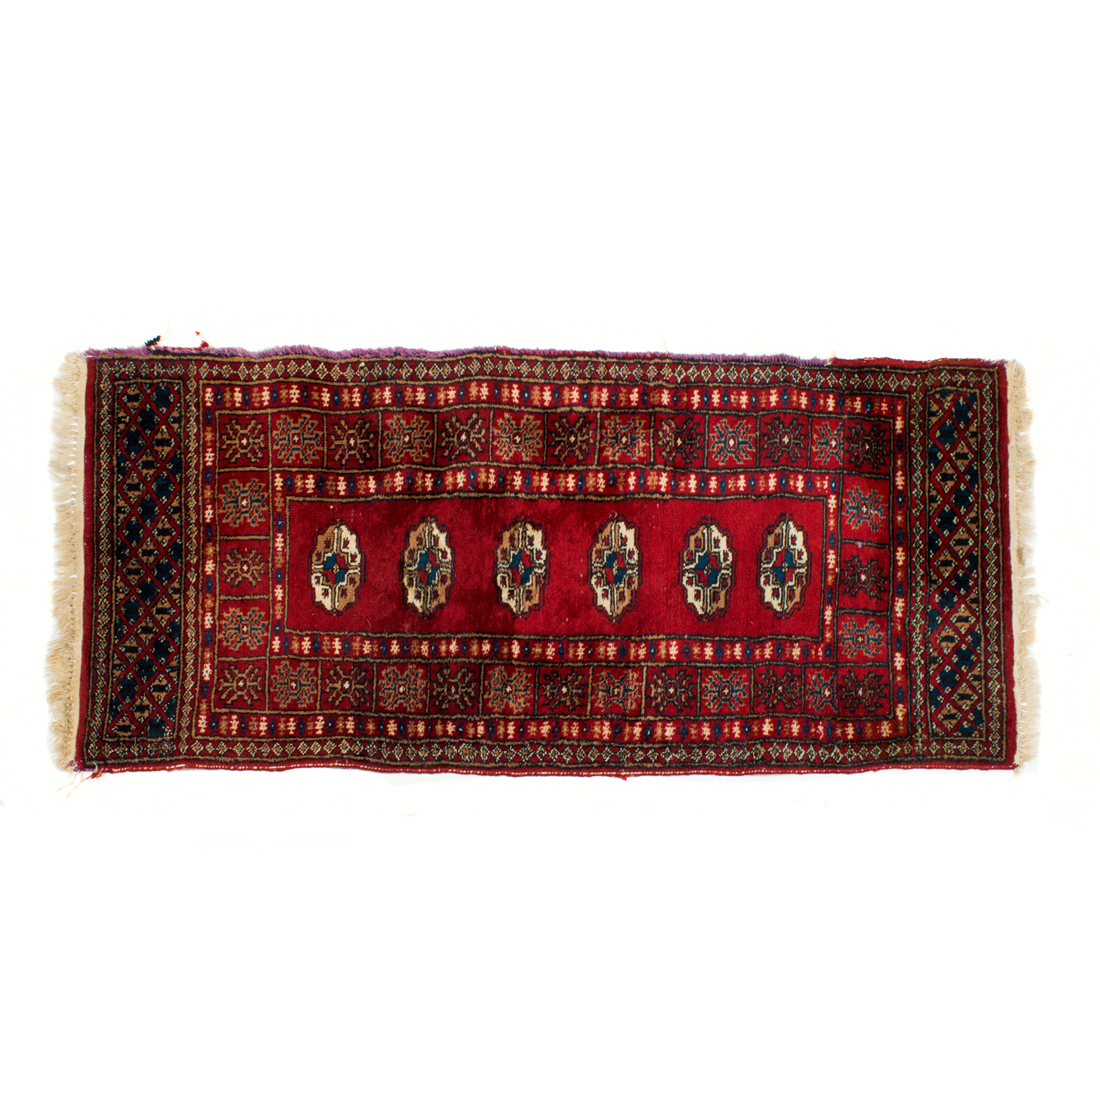 PAKISTANI CARPET Pakistani carpet  2d2938